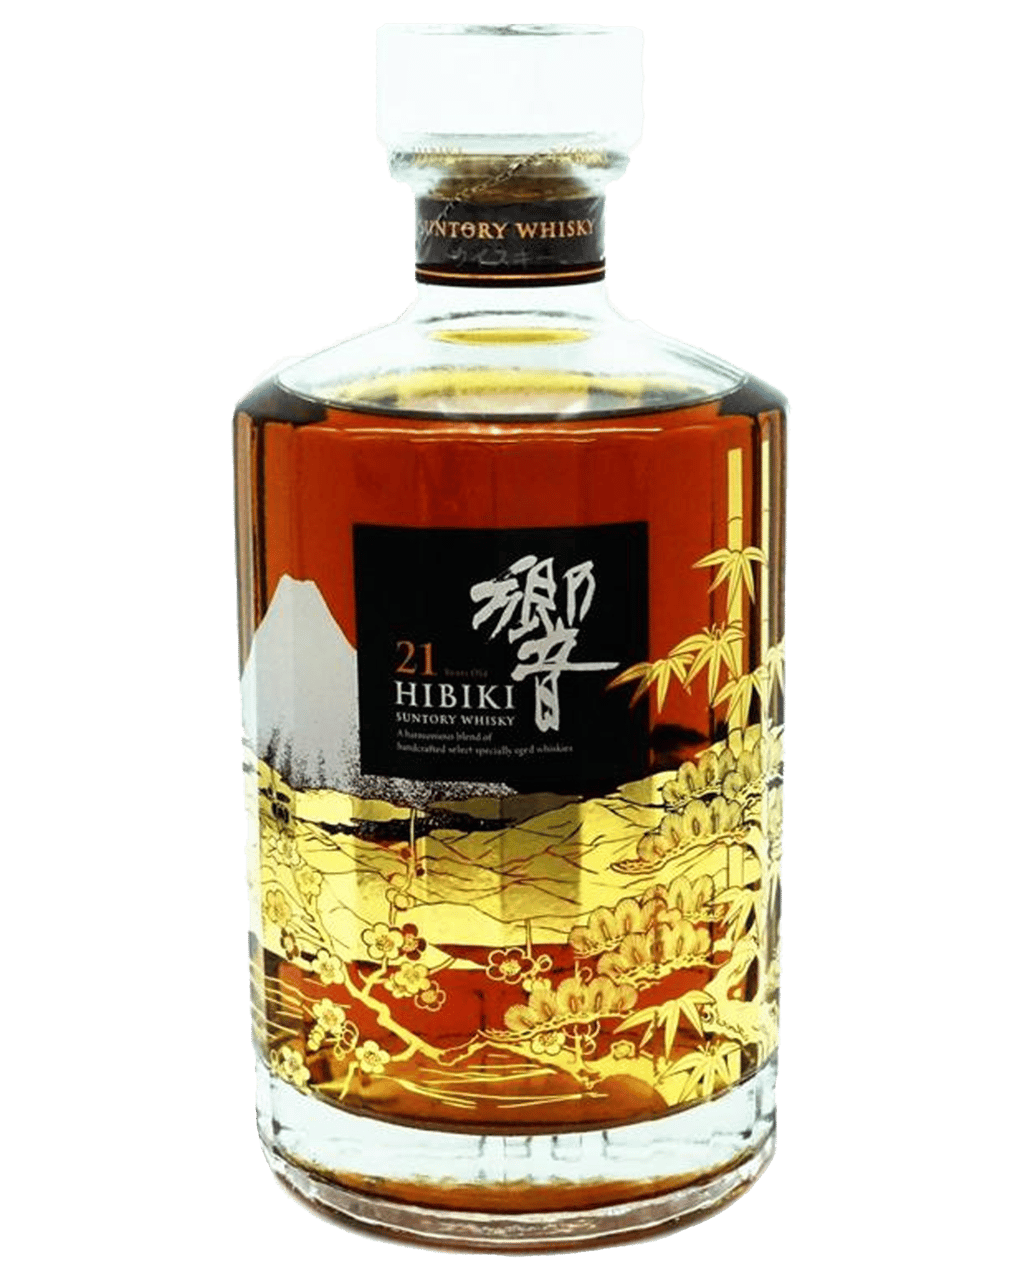 Hibiki 21 Year Old Mount Fuji Limited Edition Japanese Whisky 700mL